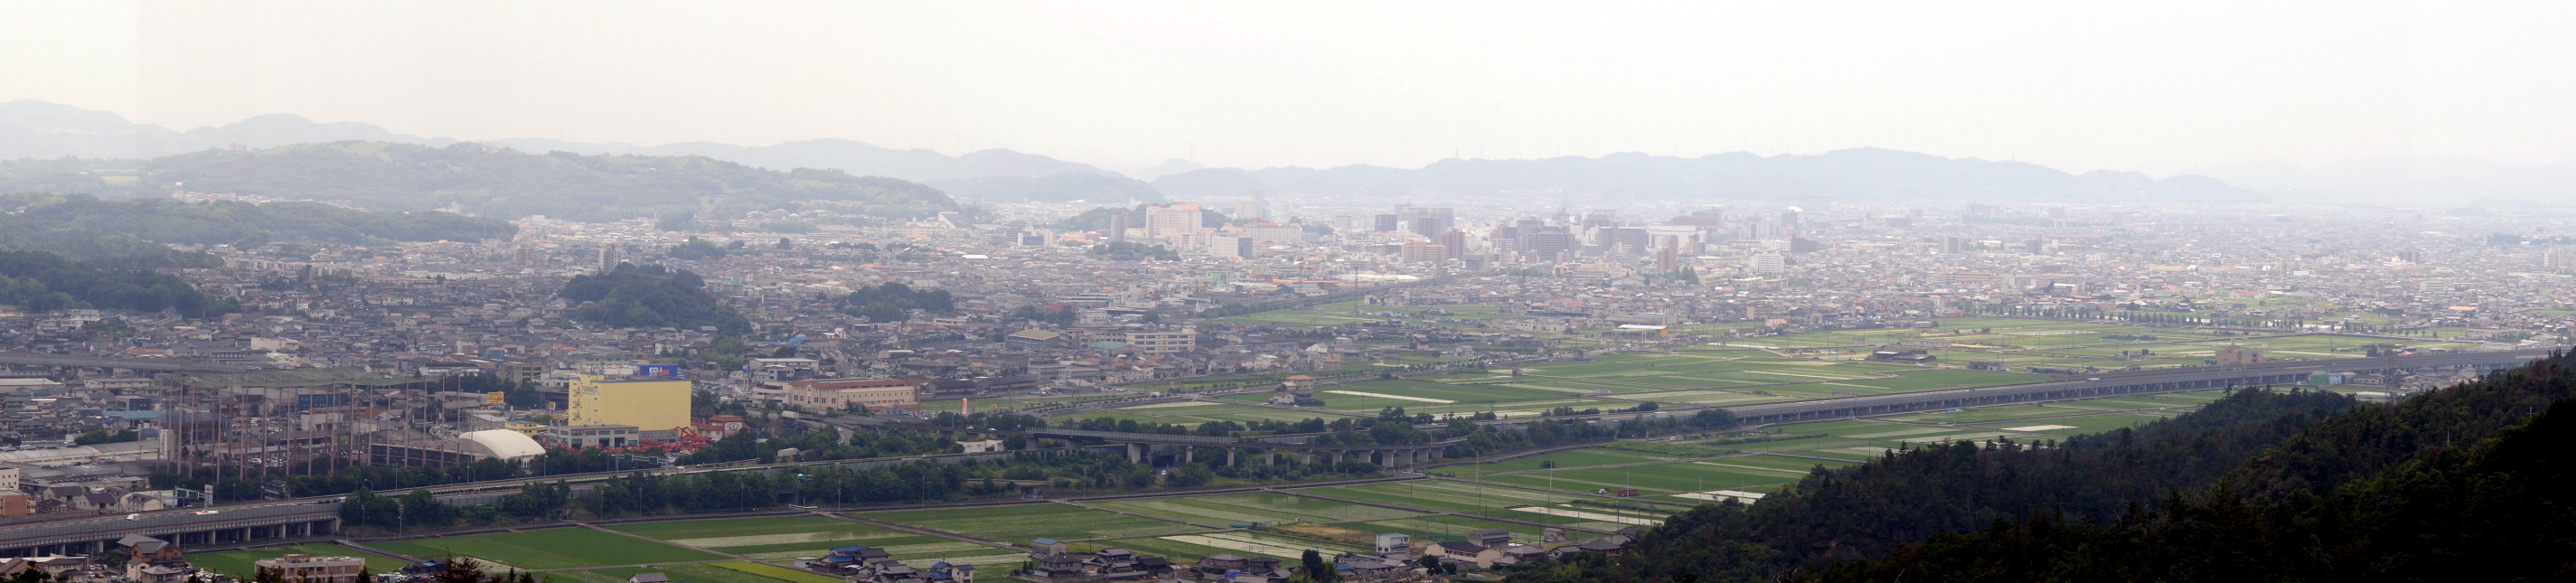 kurashiki-city-panorama-from-mt_takatoriiyama